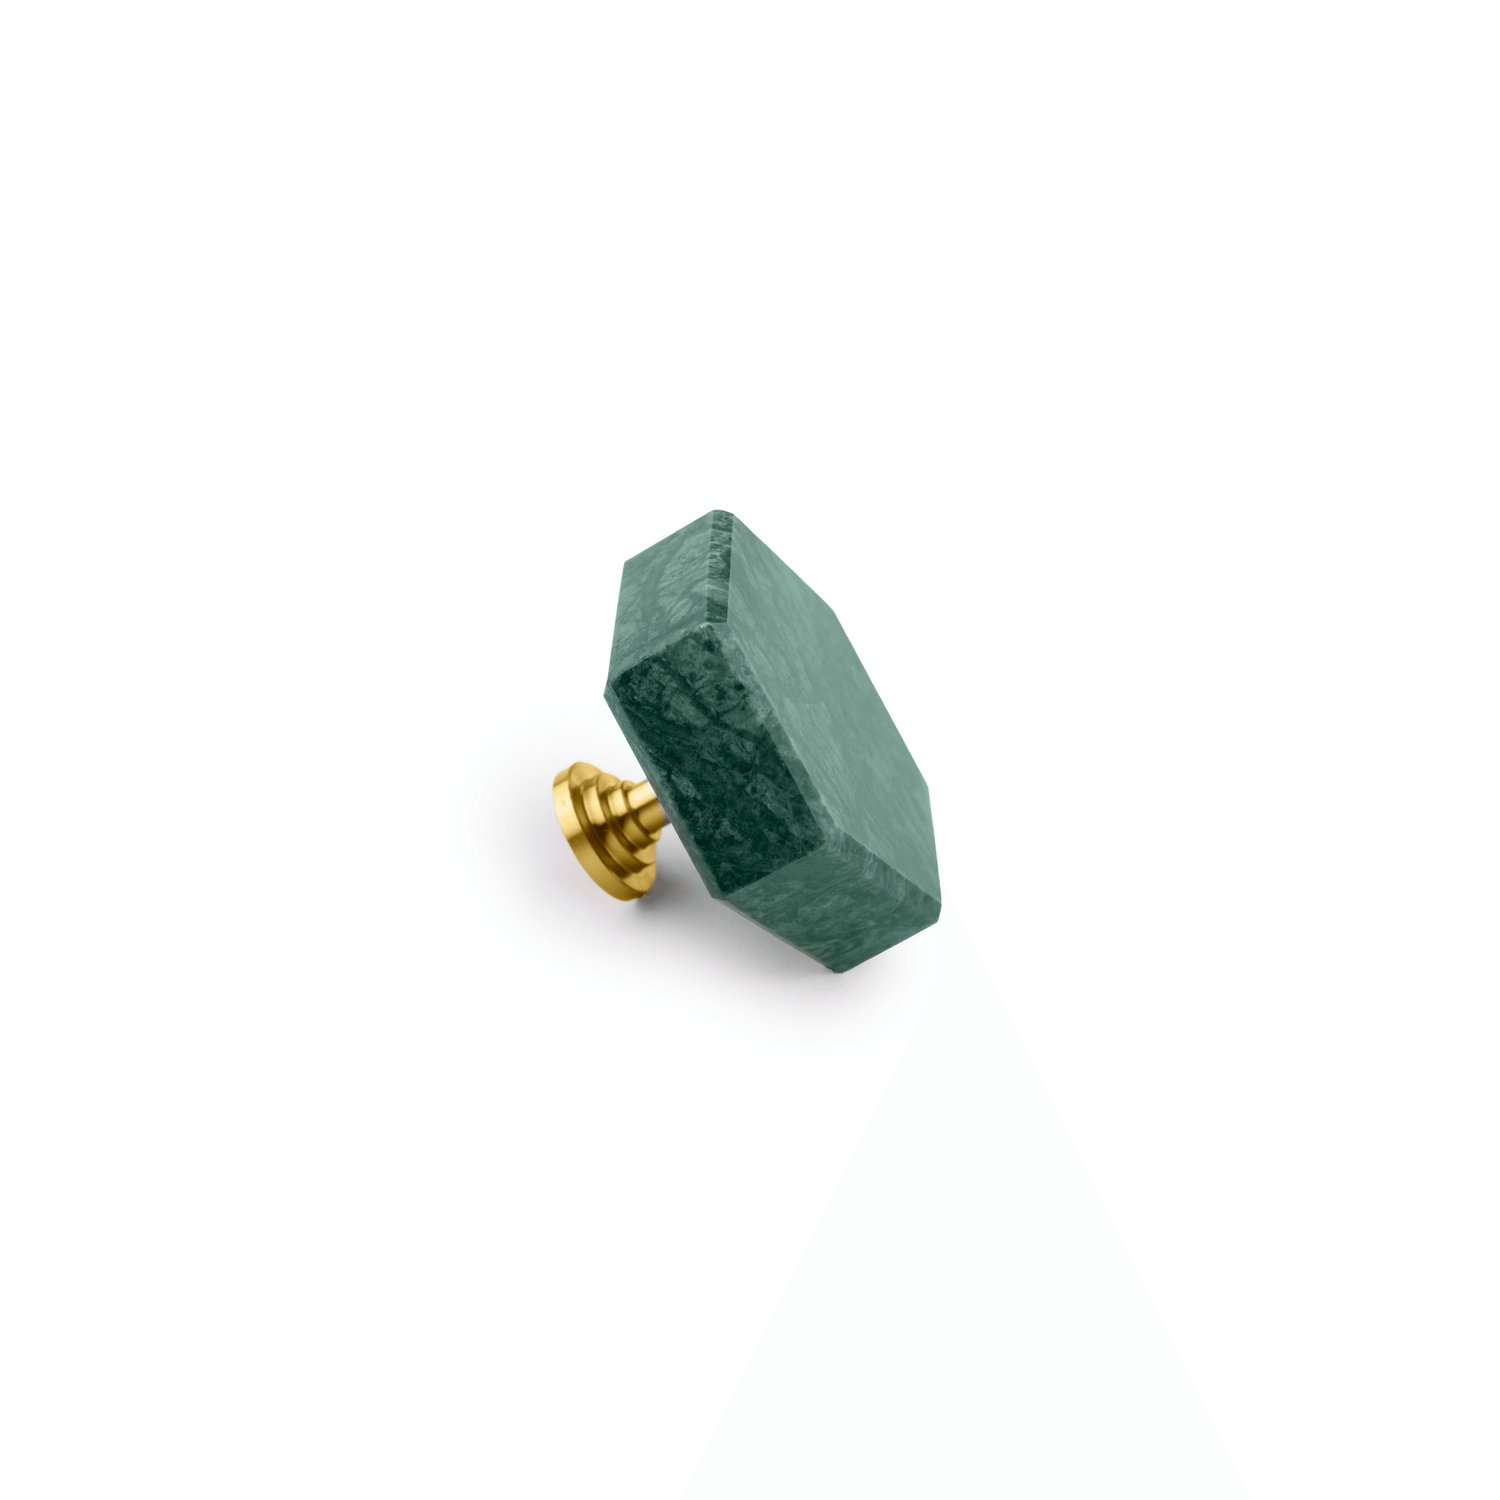 Tetris Knob Knob 43mm / Green / Marble - M A N T A R A